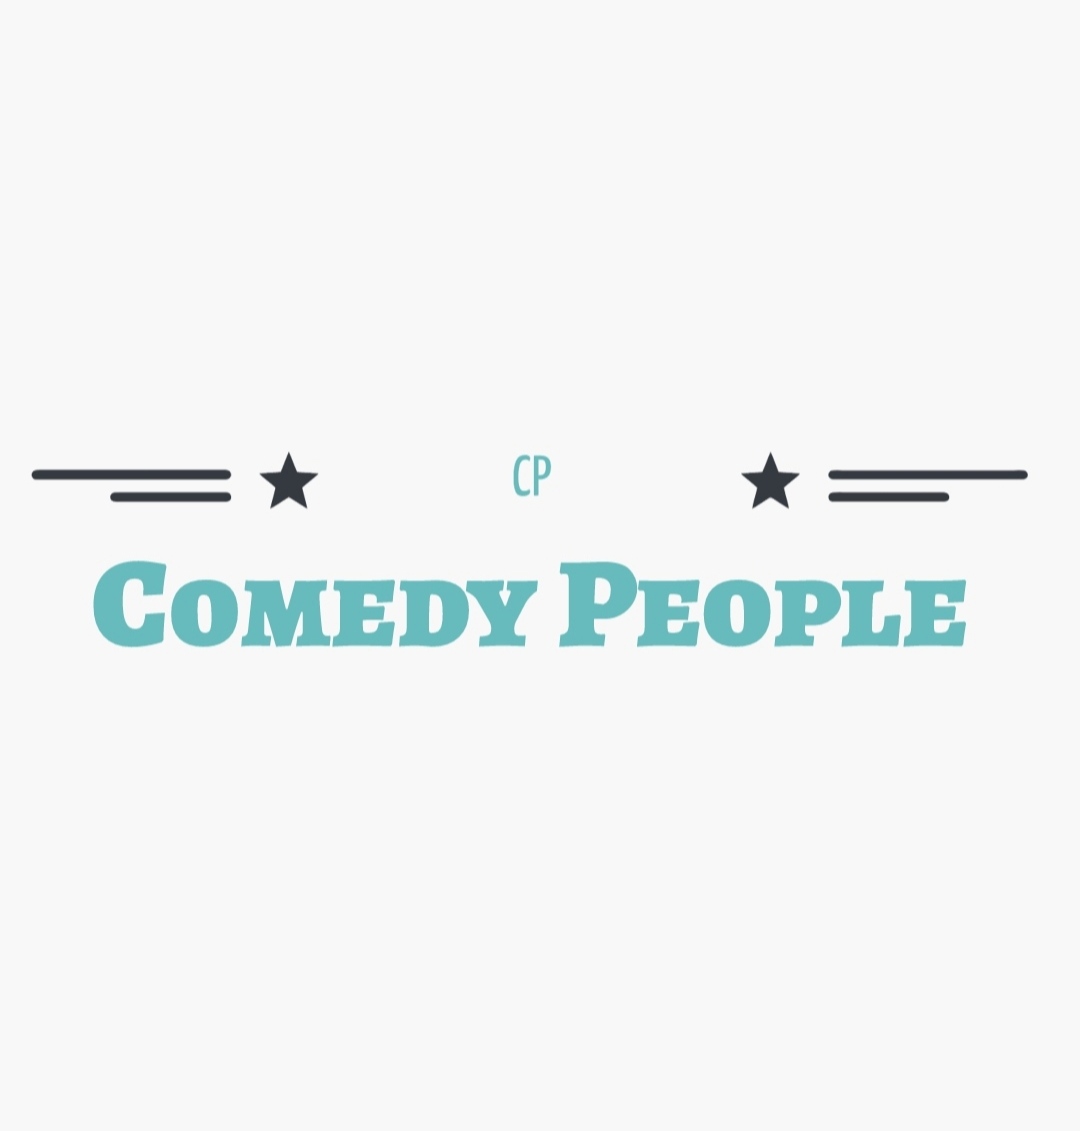 АНОНС шоу Comedy People на 10 июня